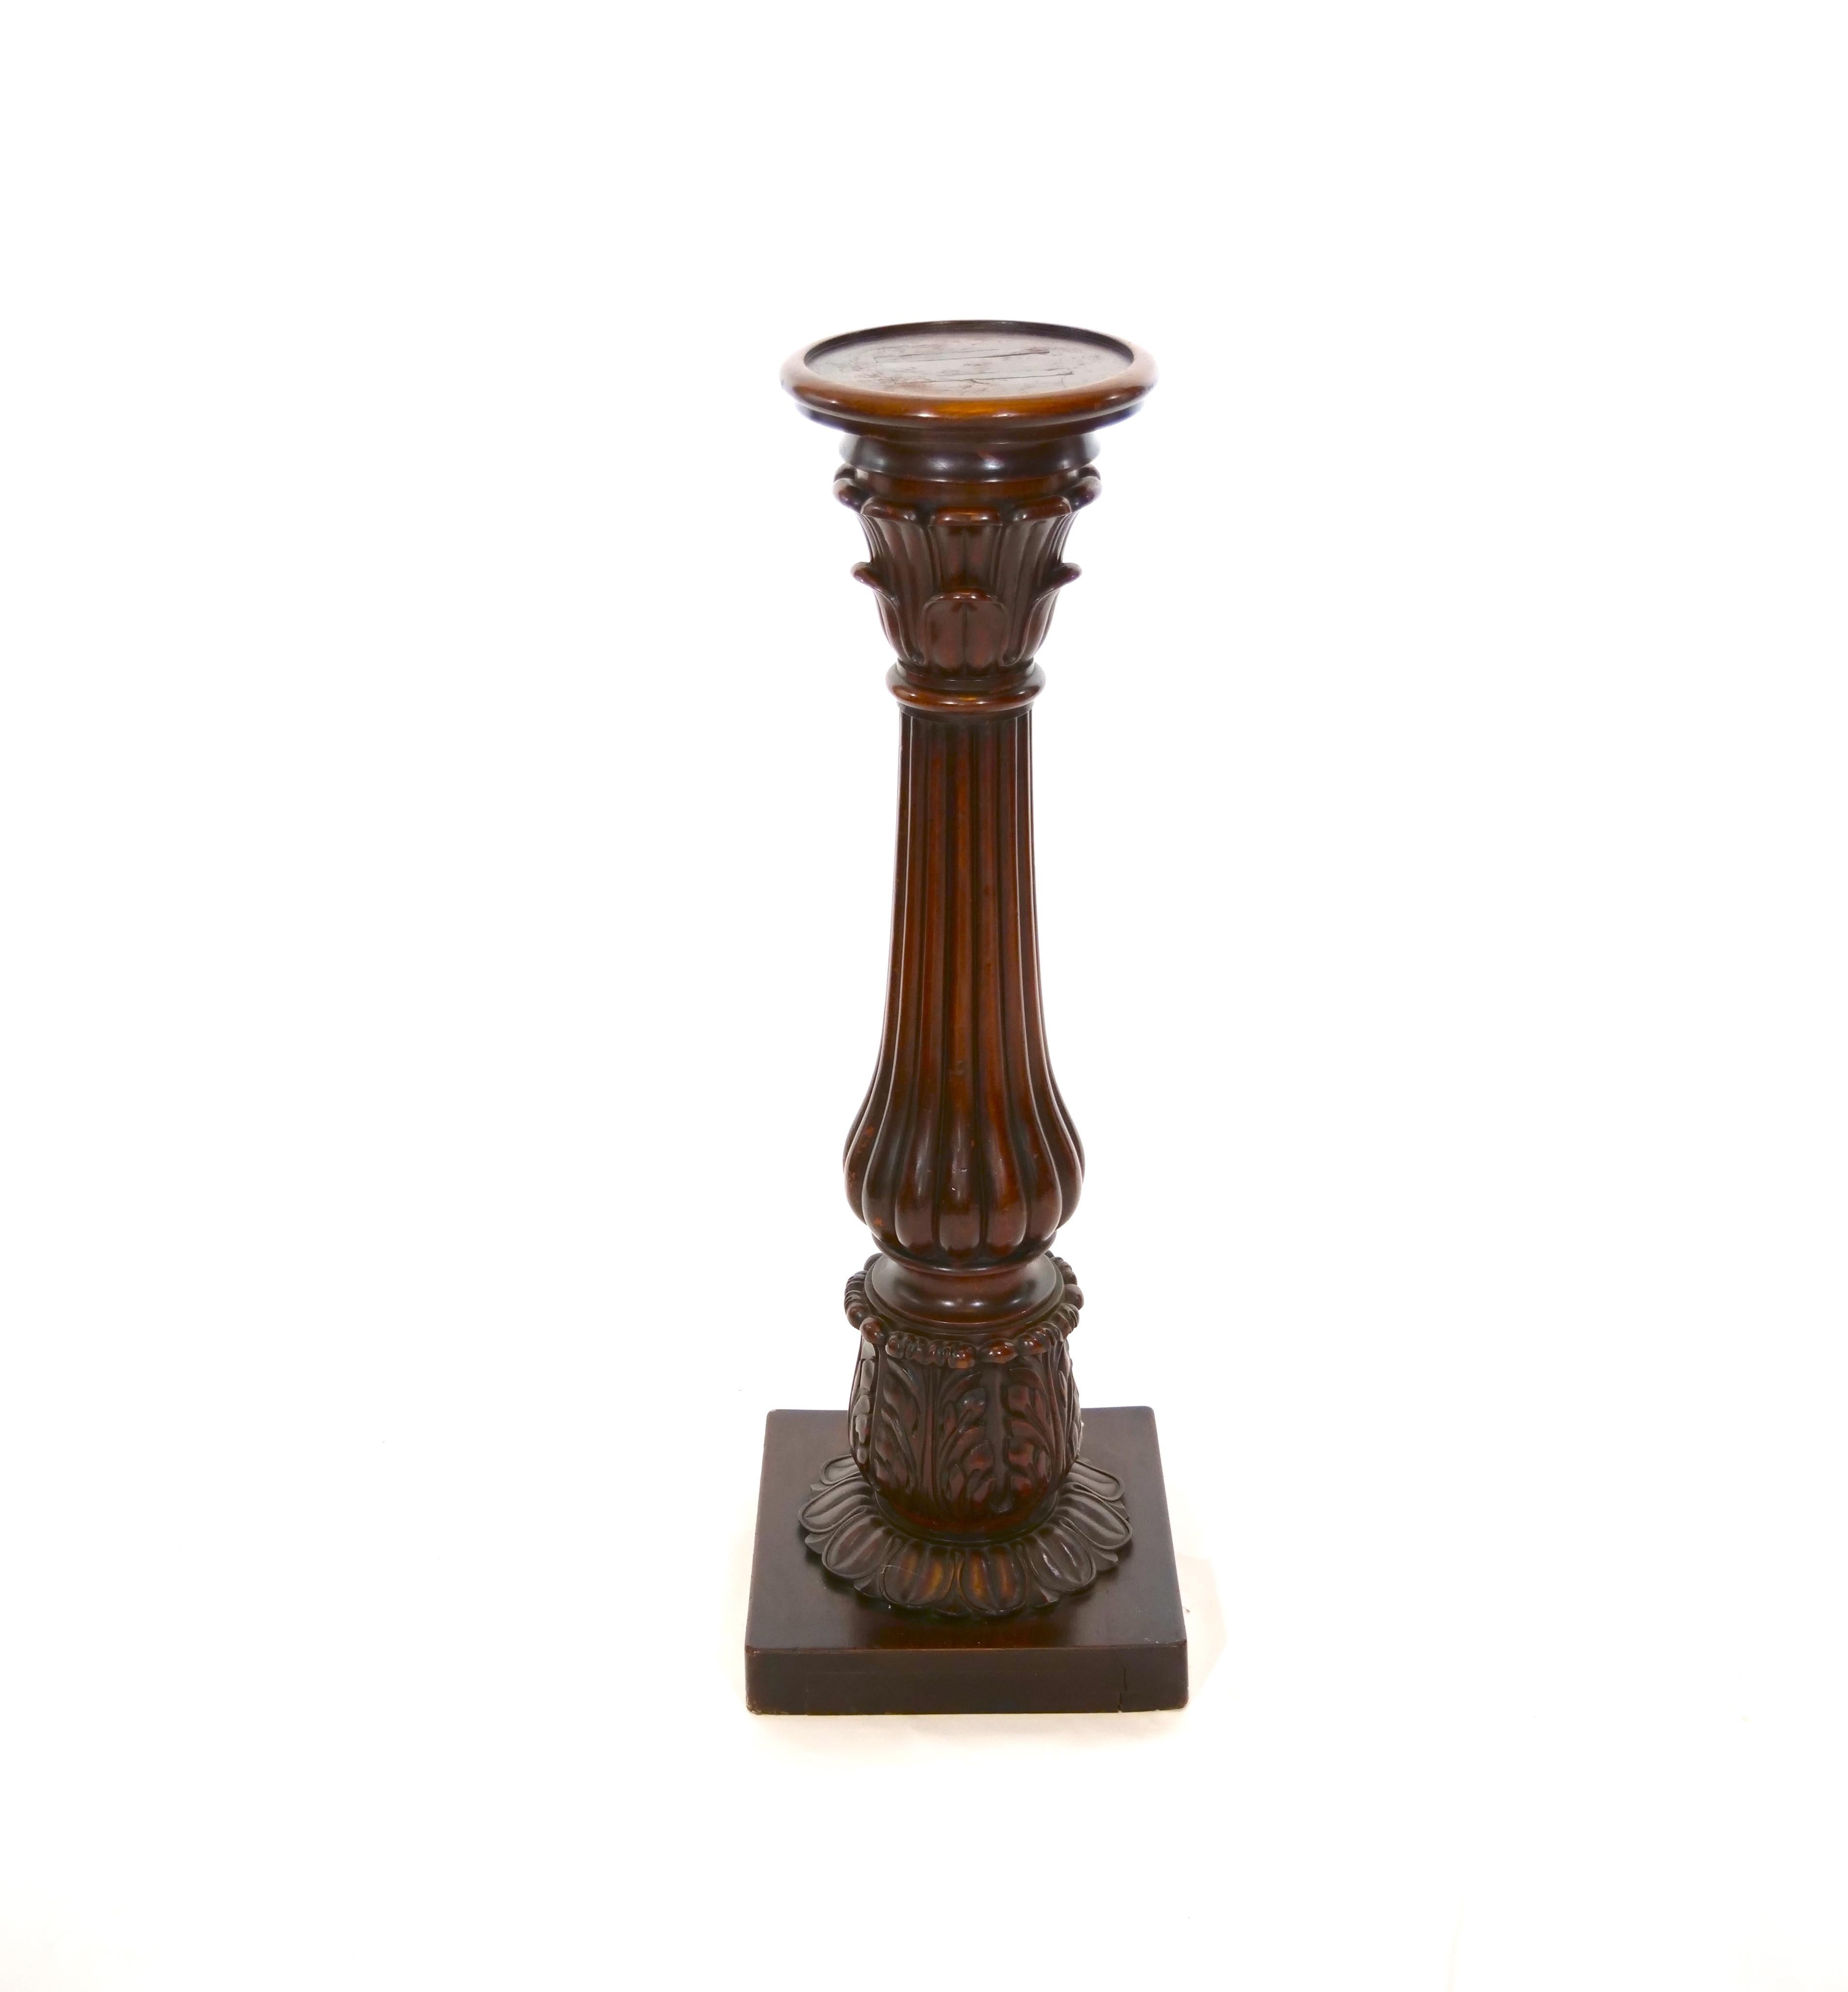 Frühes 19. Jahrhundert Mahagoniholz Regency-Stil Sockel / Tisch. Der Sockel weist handgeschnitzte Designdetails auf und ruht auf einer quadratischen Basis. Der Sockeltisch ist in einem guten antiken Zustand. Angemessene Abnutzung im Einklang mit